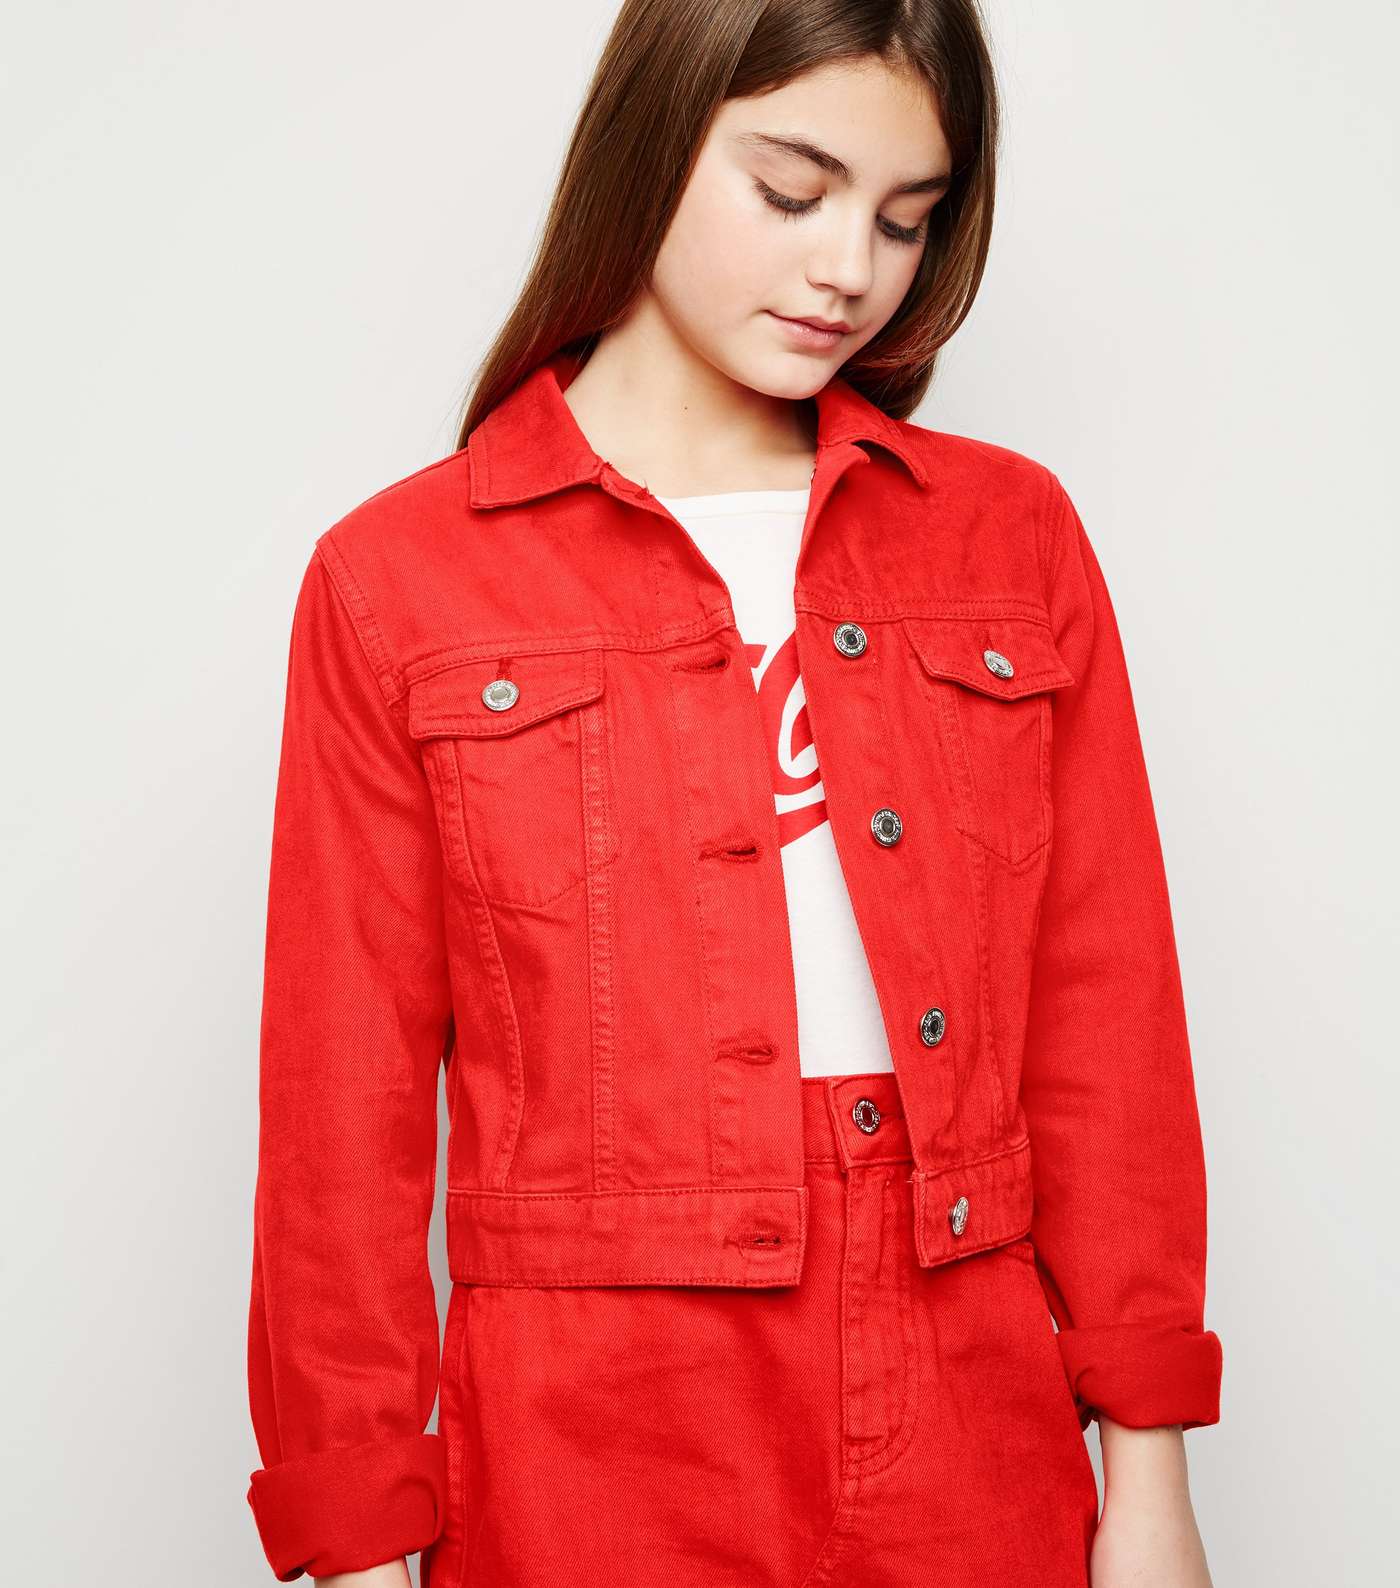 Girls Red Denim Jacket